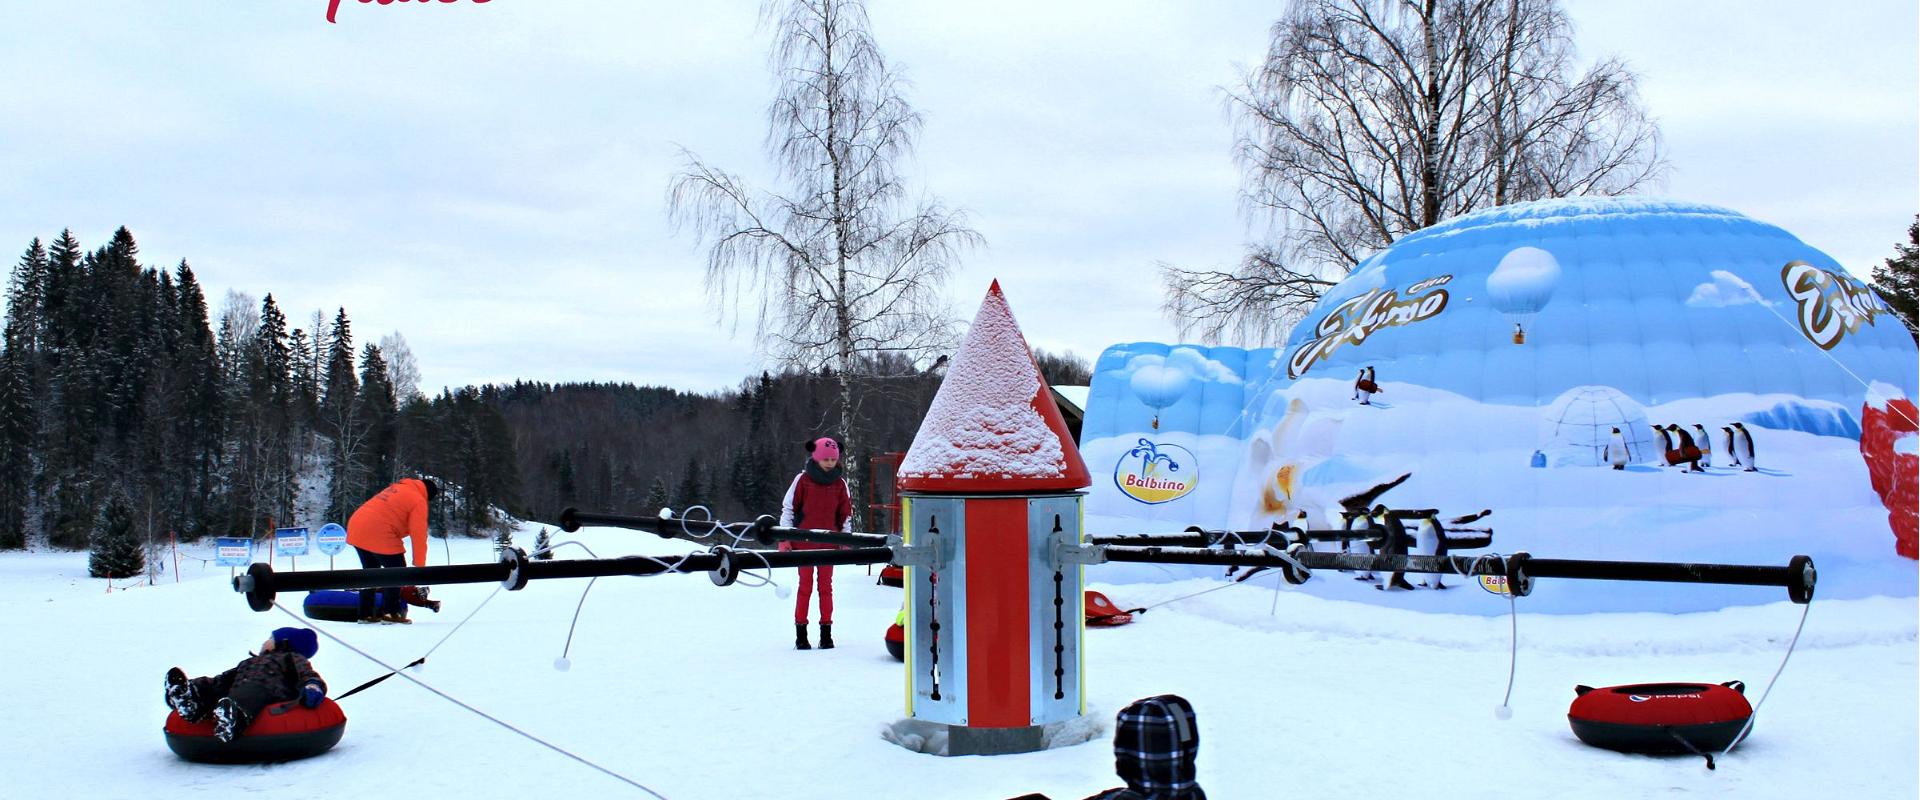 Winterplace in Otepää